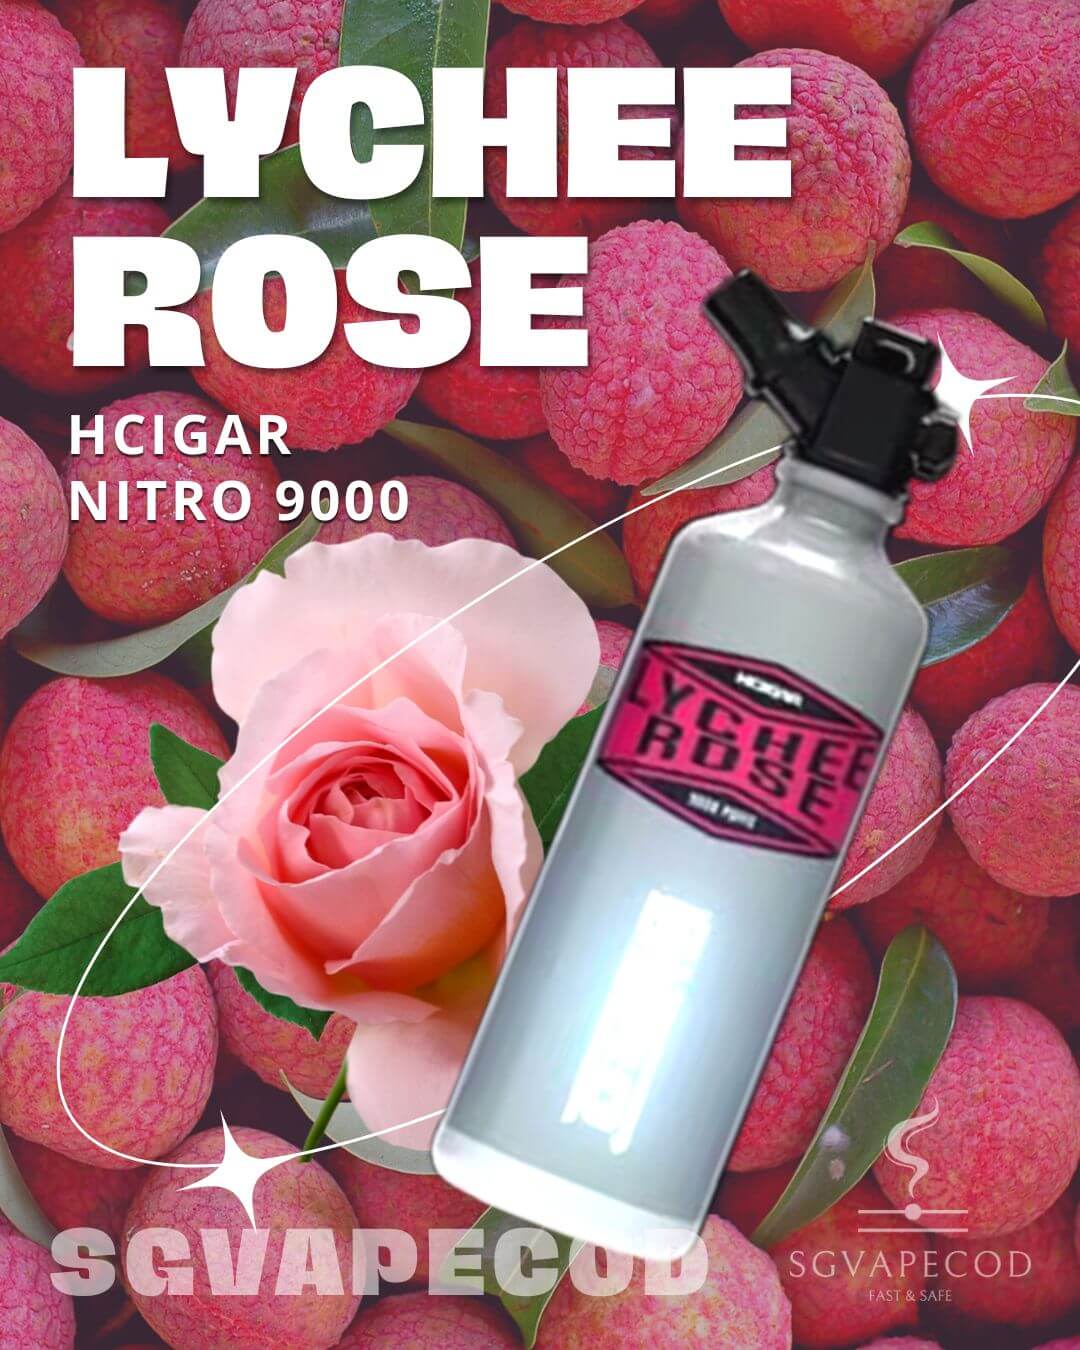 Hcigar Nitro 9000-Lychee Ross